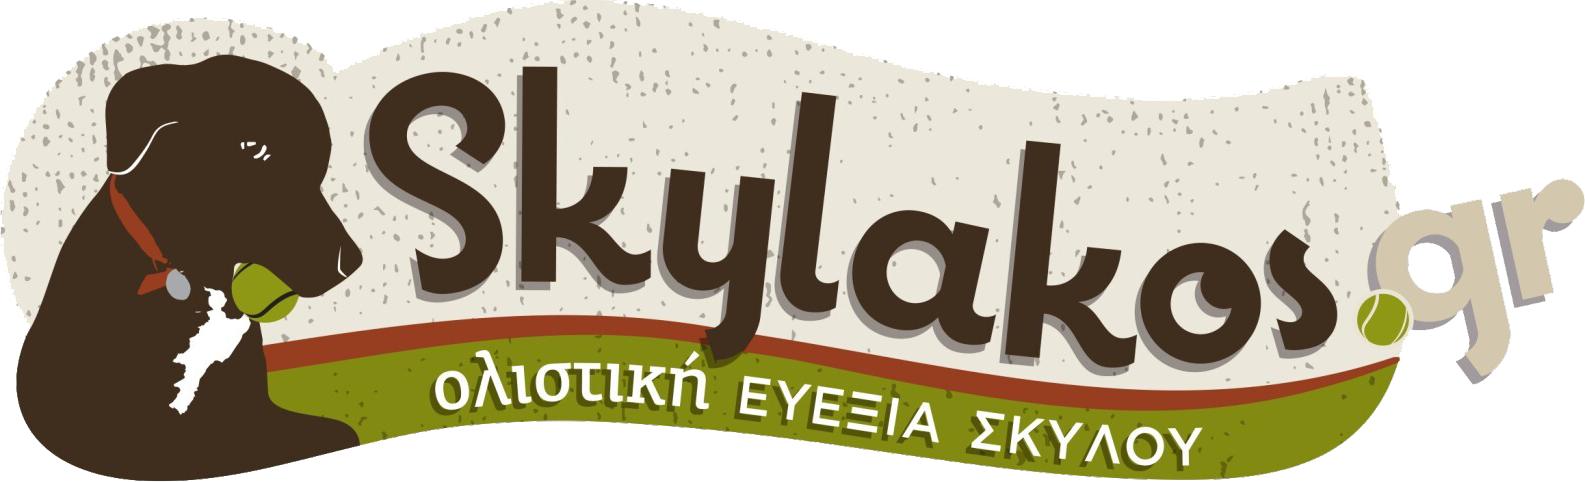 Skylakos.gr